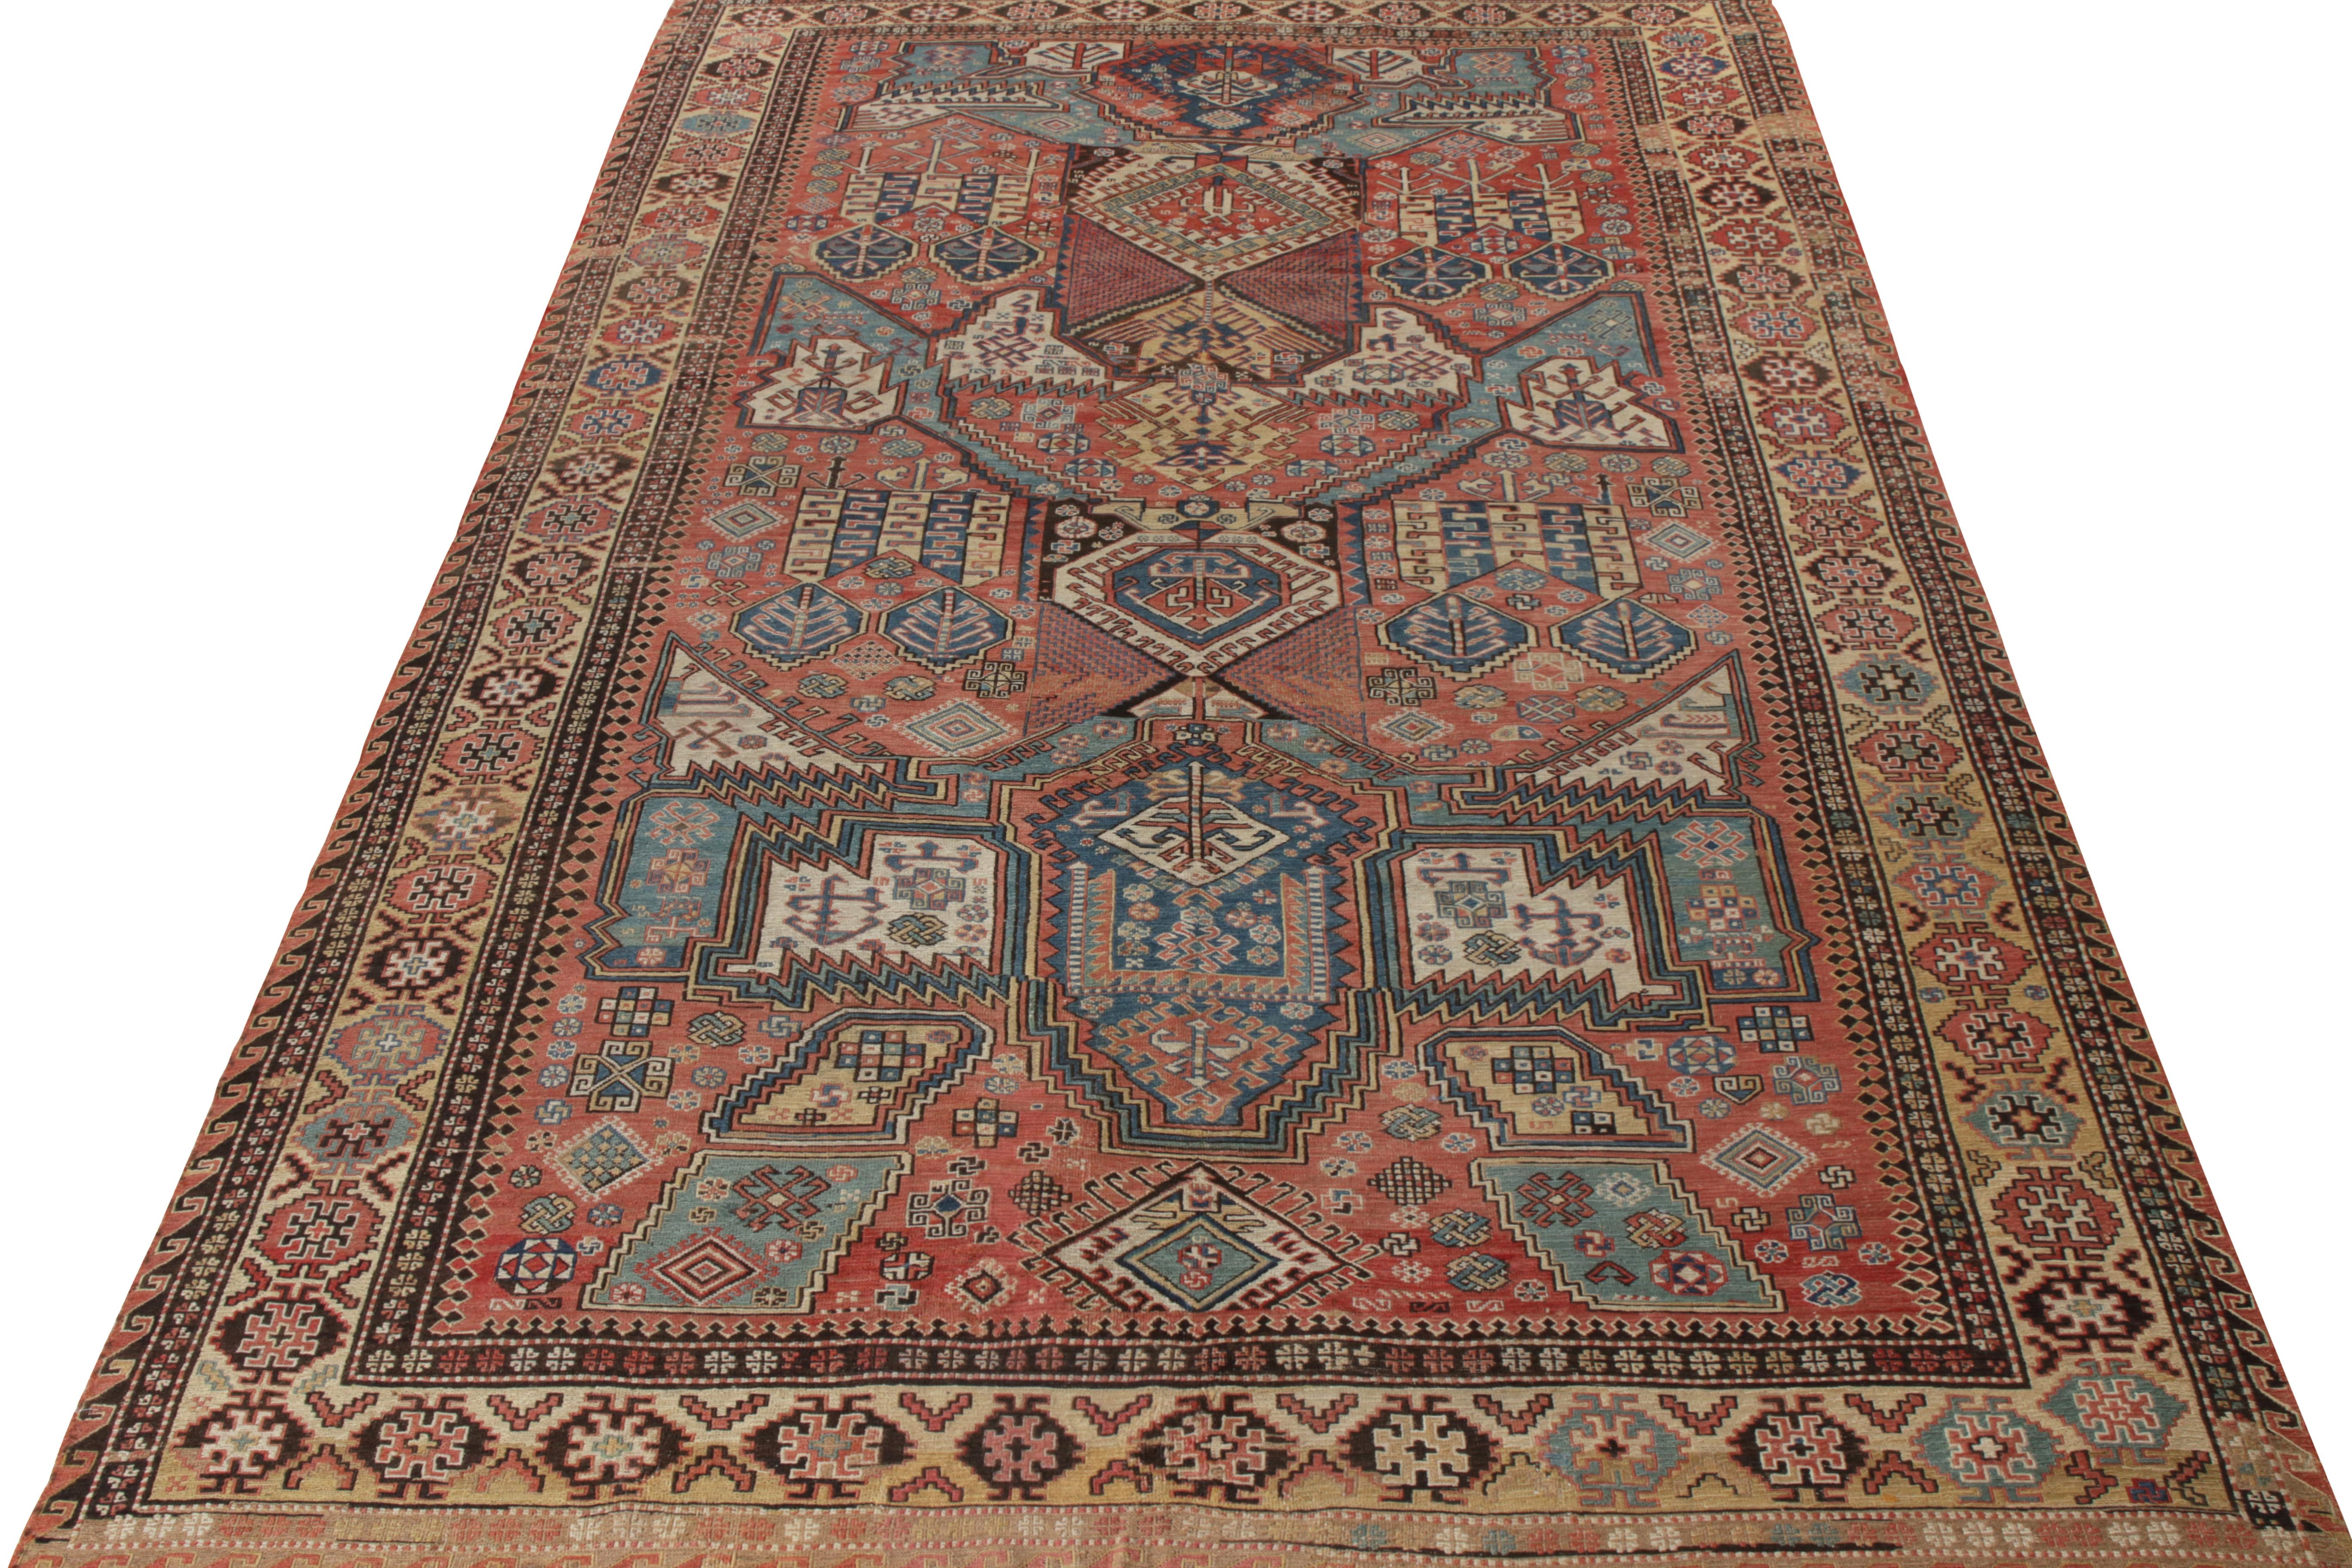 Handgeknüpfter Wollteppich, ein seltener antiker Drachen-Sumak-Teppich aus Russland (ca. 1920-1930), der sich durch die Verbindung der begehrten Farben Blau, Beige-Braun und Rot mit einem gut definierten geometrischen Muster auszeichnet, das die